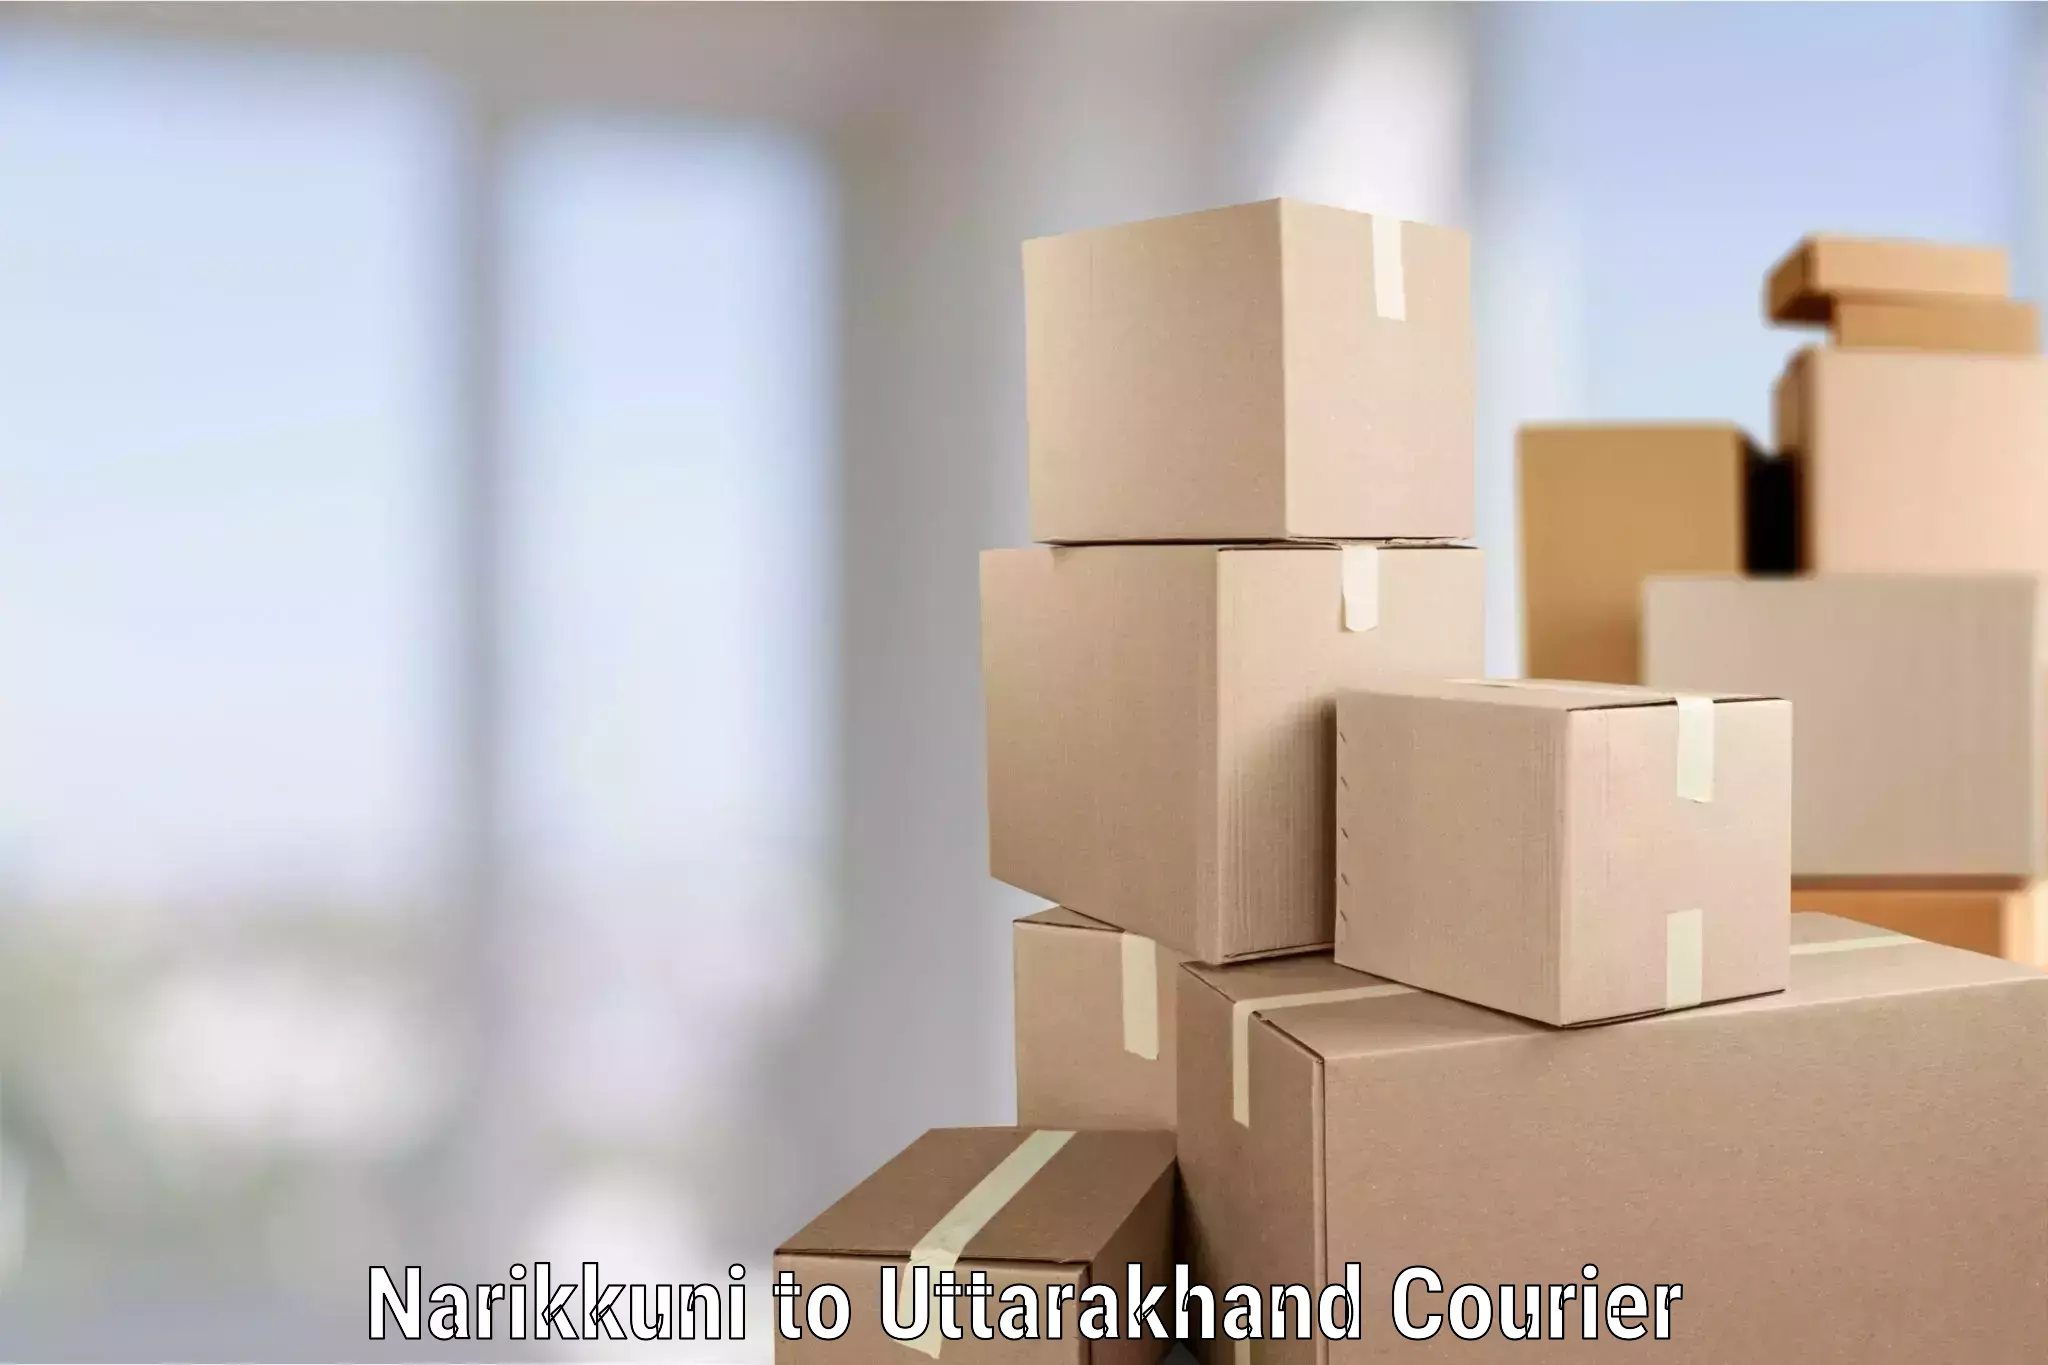 Furniture moving plans Narikkuni to Rishikesh